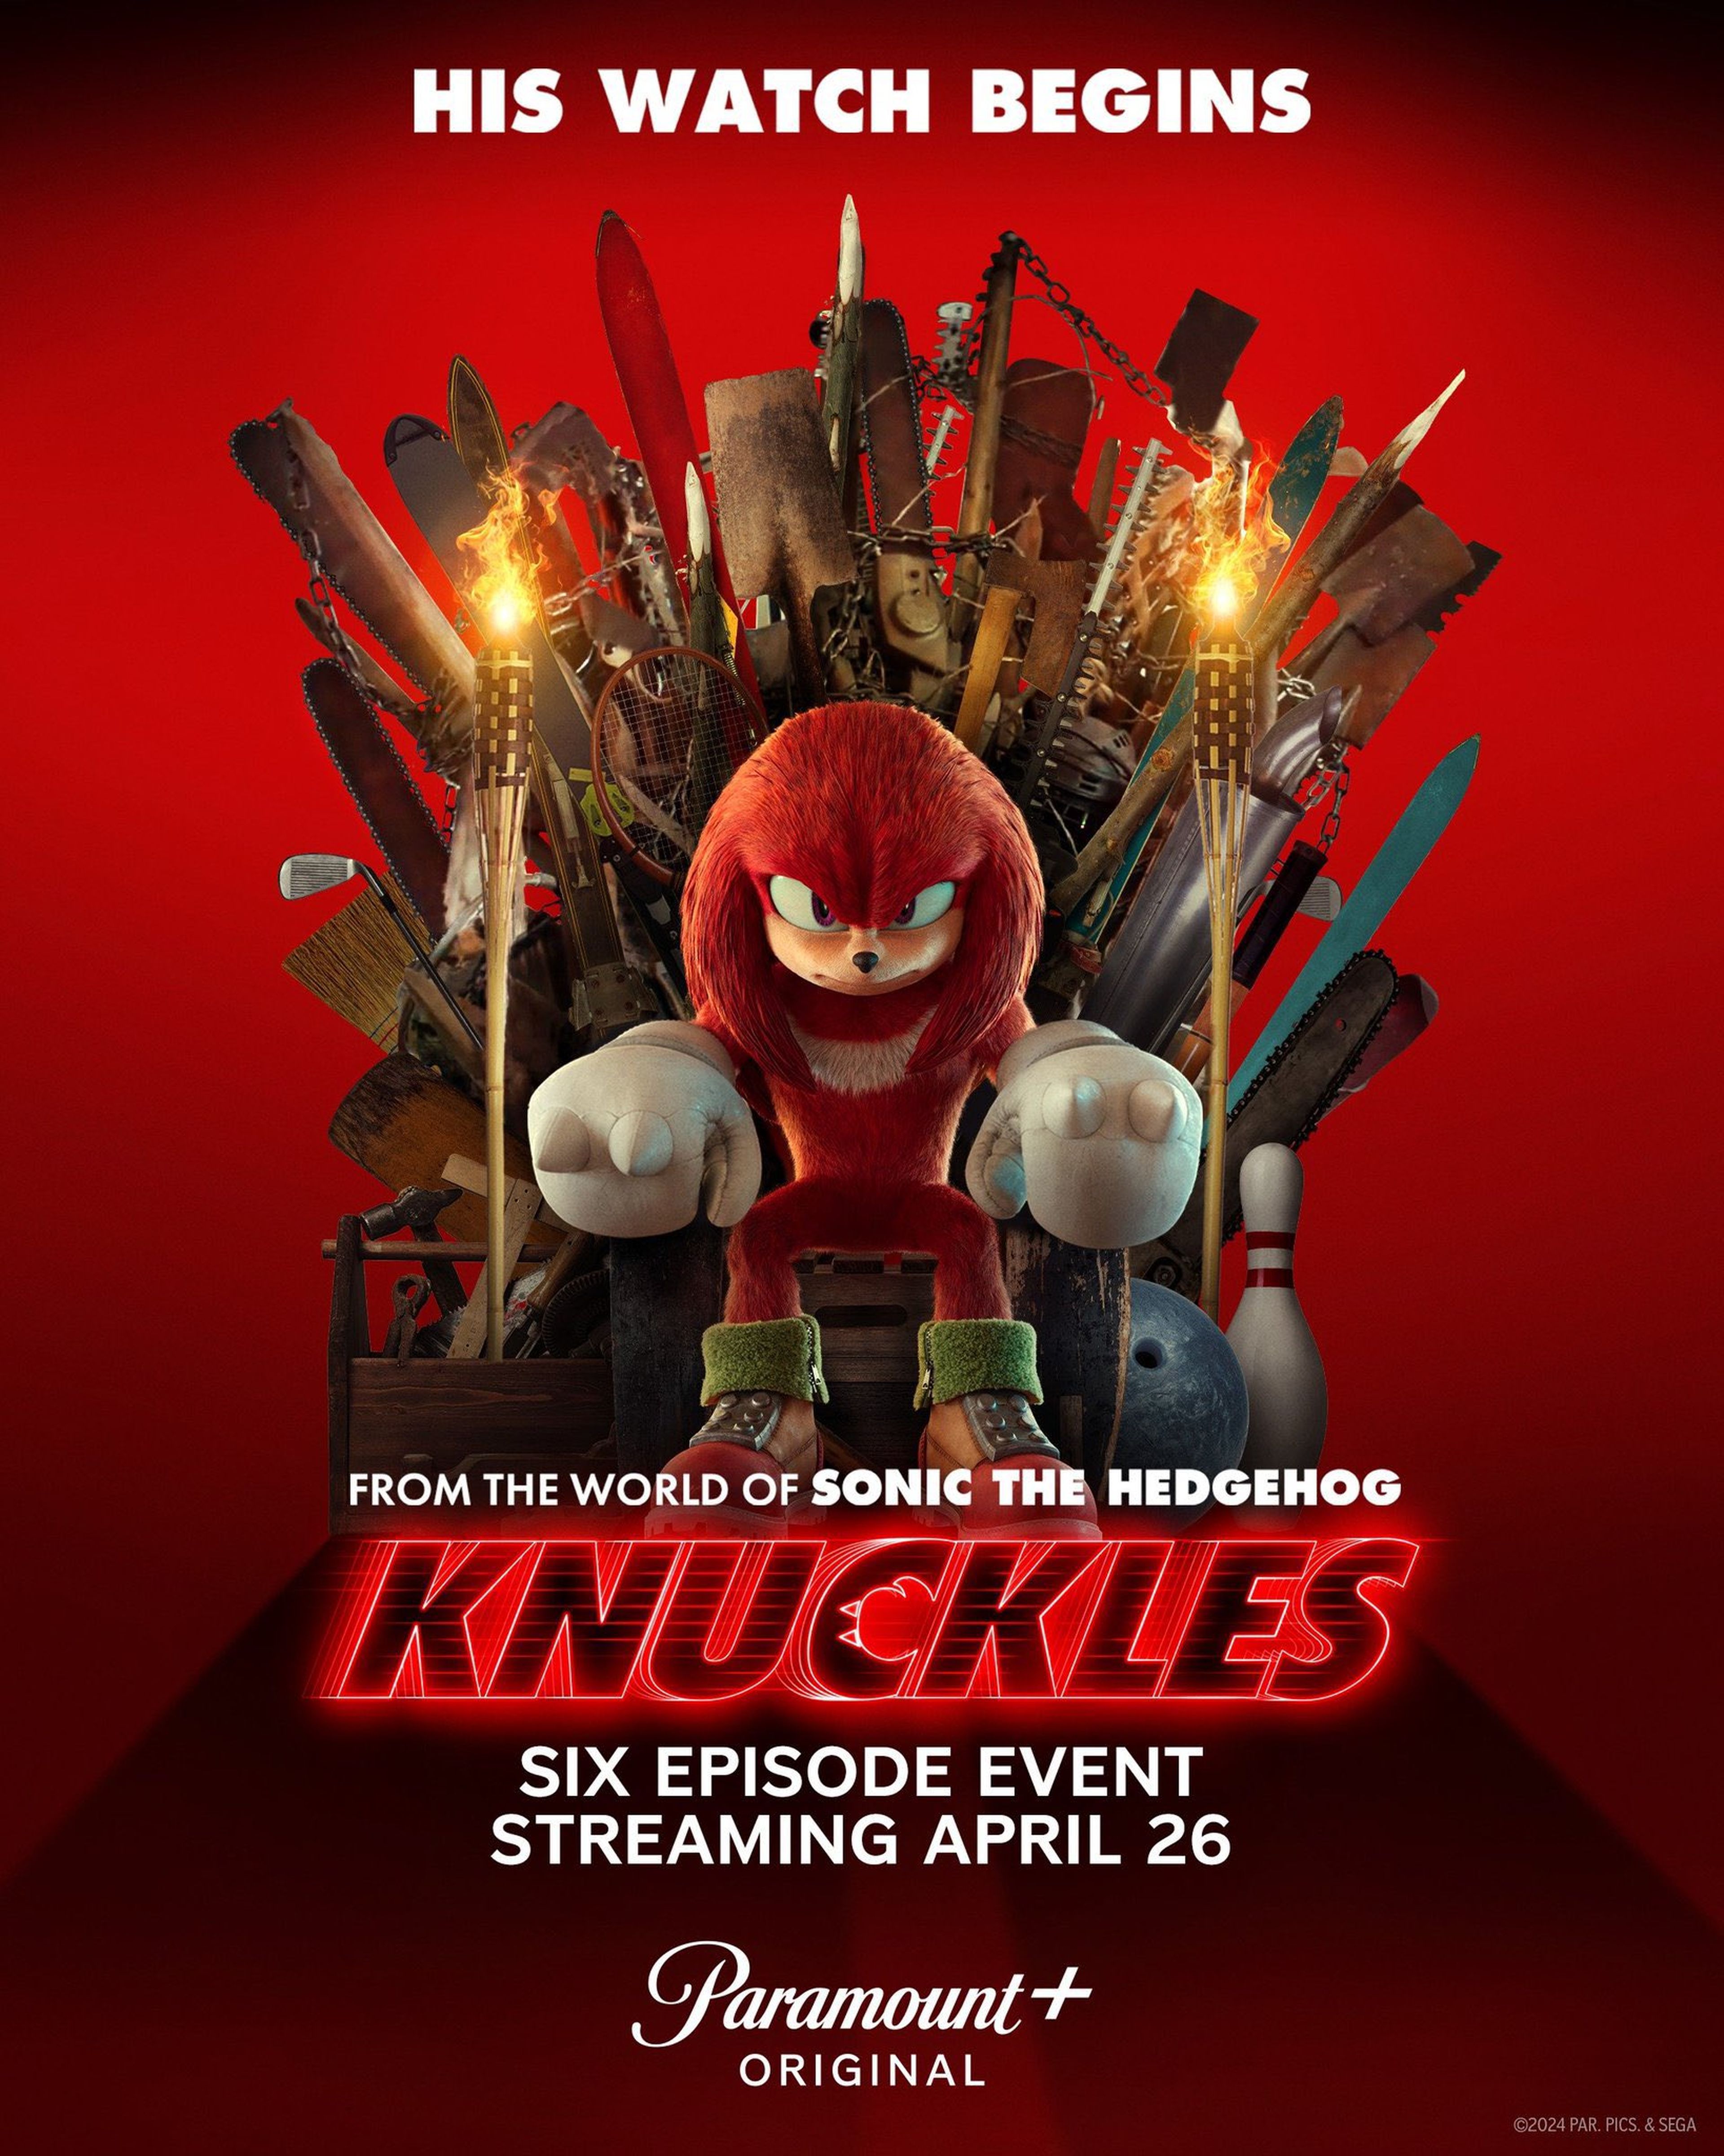 Desvelado el nuevo póster de Knuckles, la serie spin-off de Sonic que llegará a SkyShowtime este mismo año